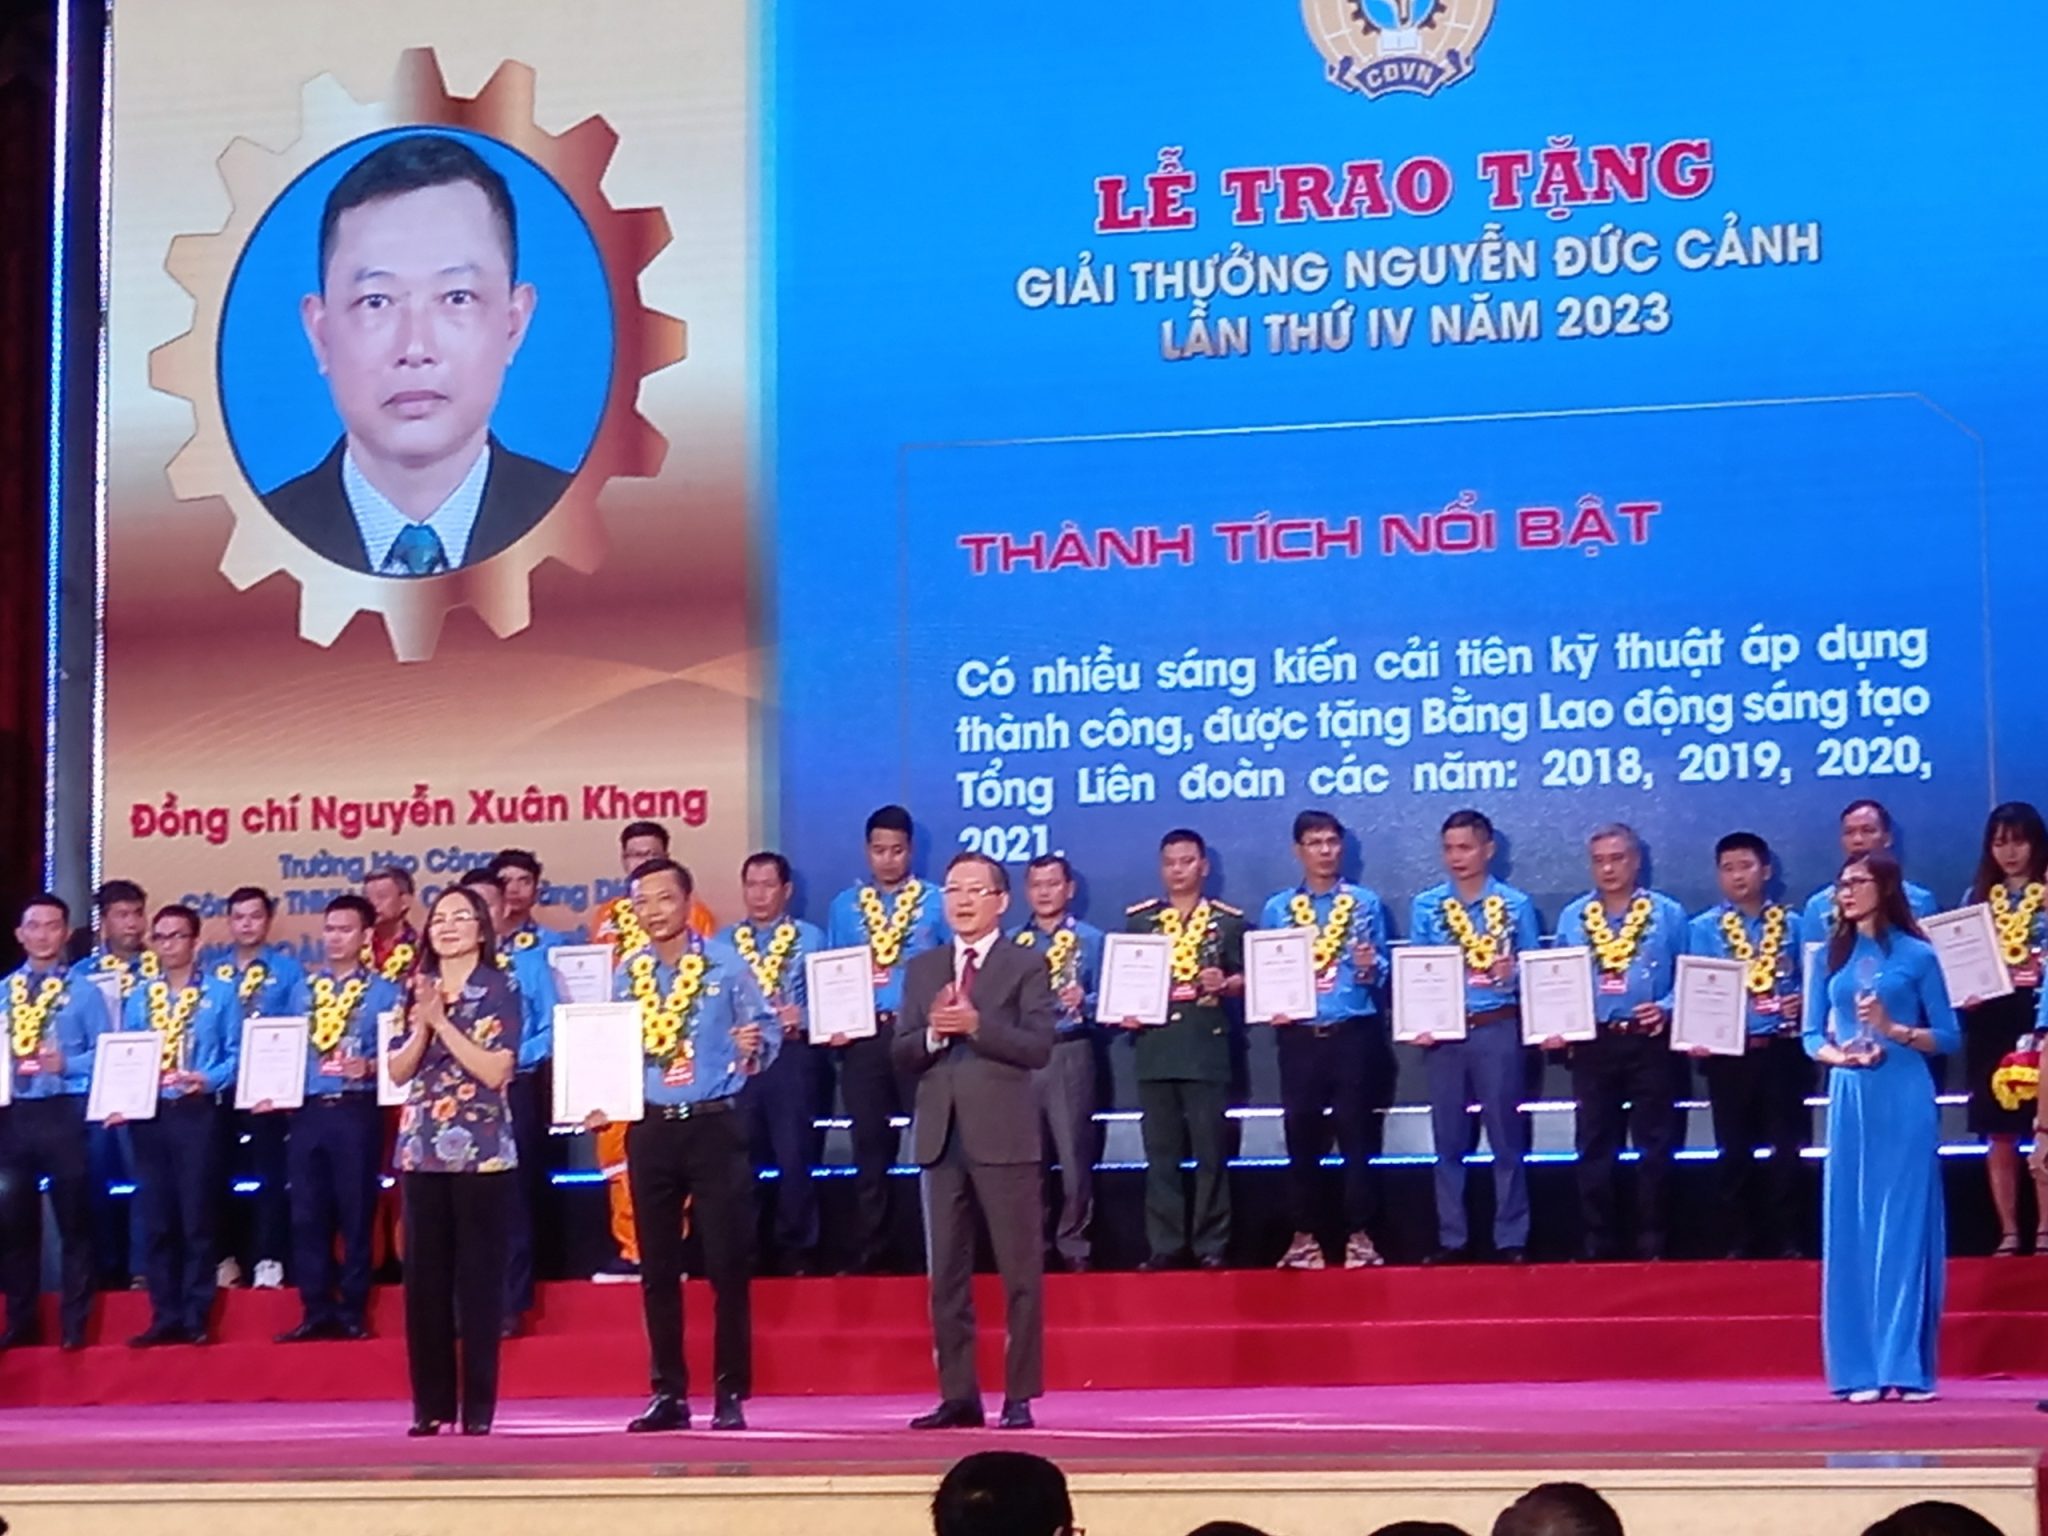 Công nhân lao động tiêu biểu của Cảng Hải Phòng là đại diện duy nhất của VIMC được vinh dự đón nhận Giải thưởng Nguyễn Đức Cảnh lần thứ IV năm 2023